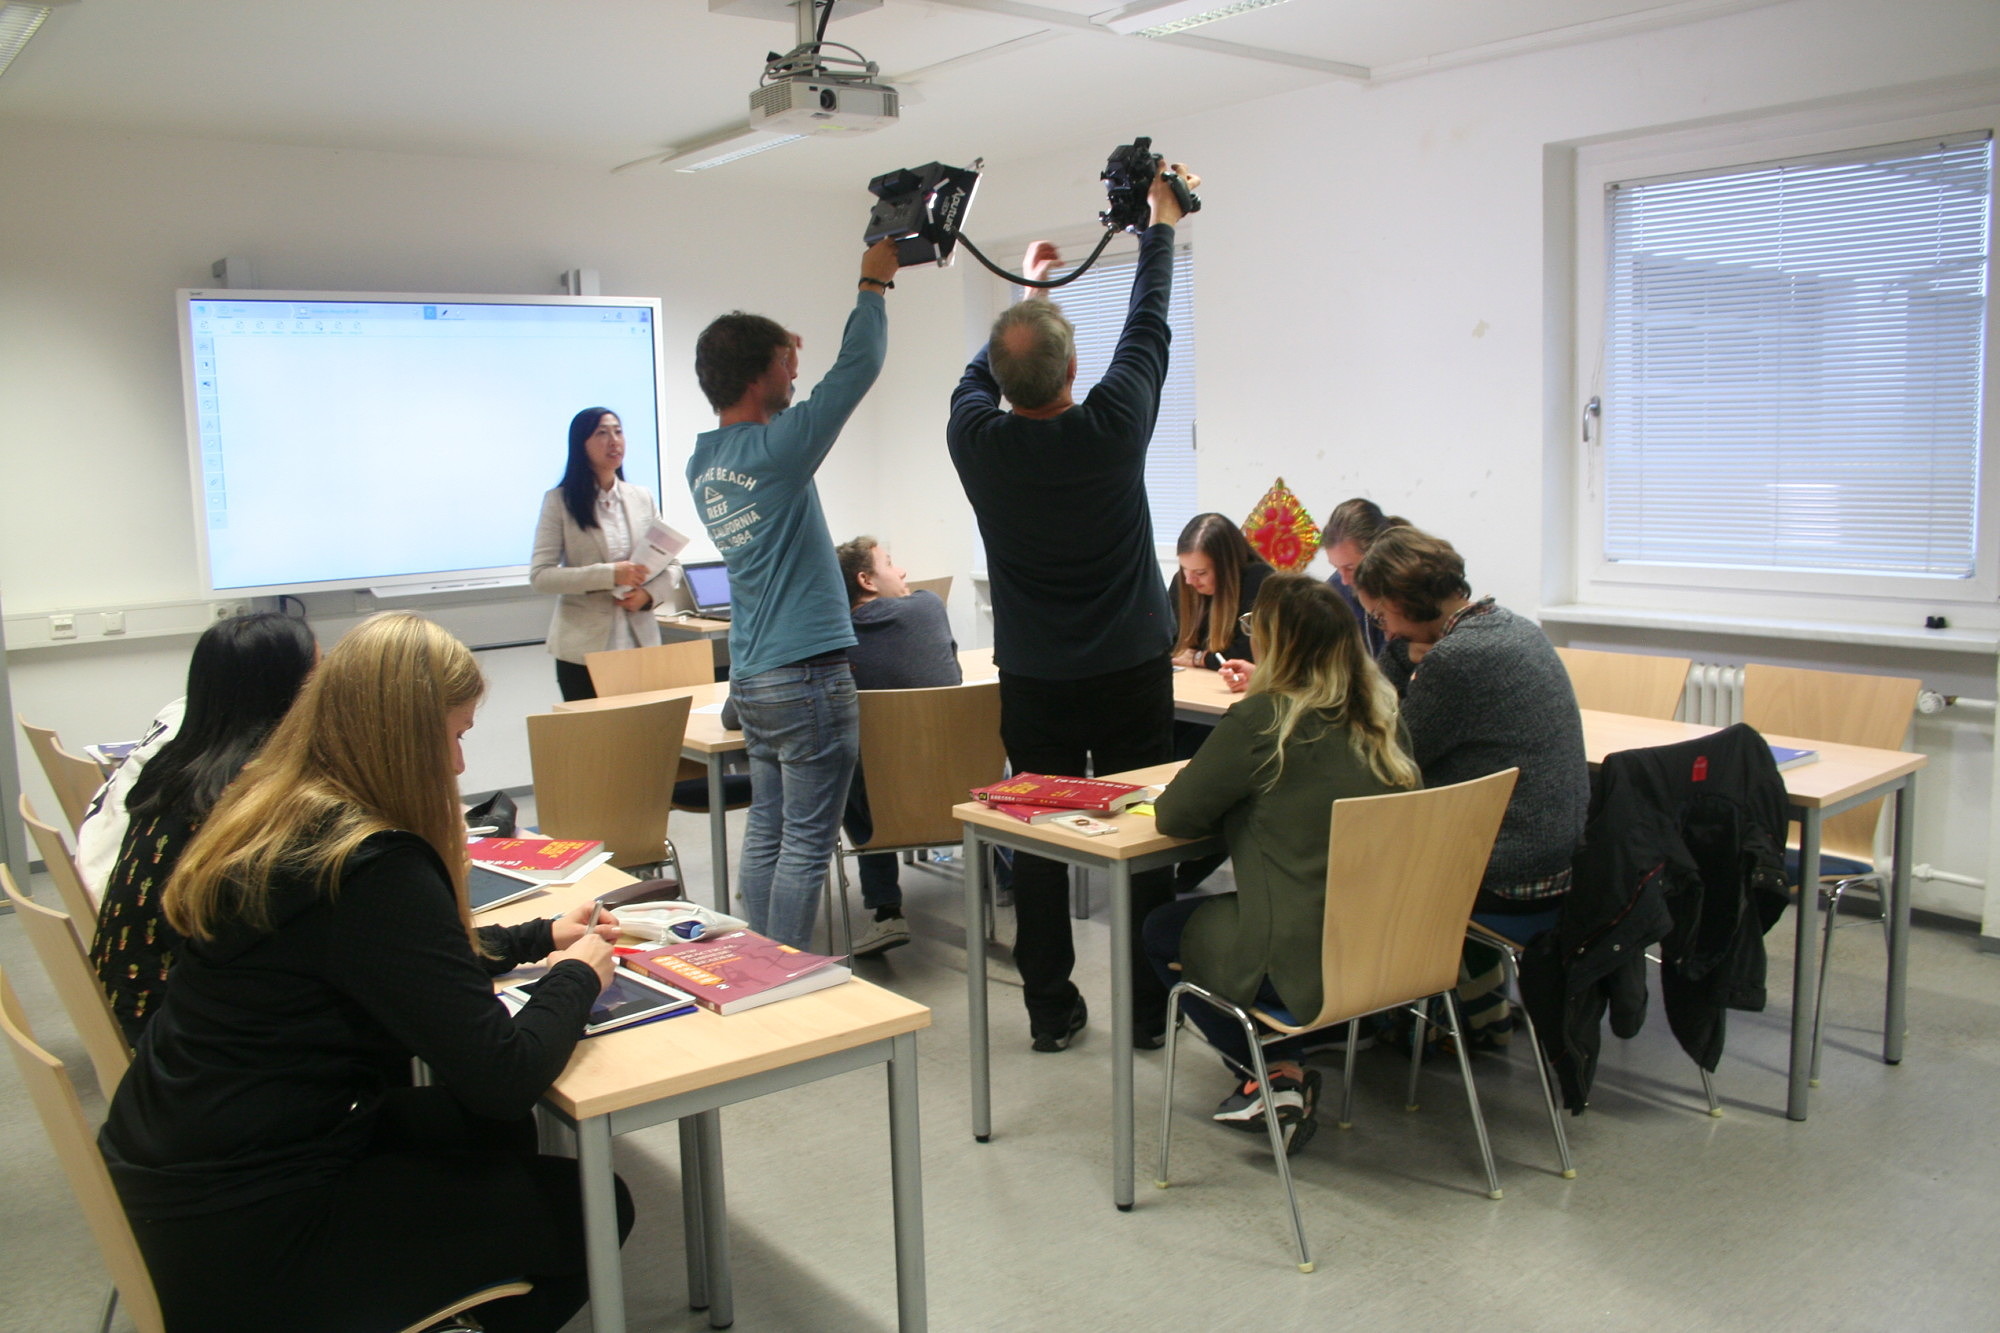 Die Teilnehmer an der Aktion "Filmdreh für das E-learning Projekt" simulieren einen typischen Unterrichtsverlauf mit Tablets, das ganze wird gefilmt. Die Teilnehmer sitzen an Tischen und nutzen Lehrbuch, sowie die Tabletts und schreiben auf diesen u.a. Schriftzeichen.